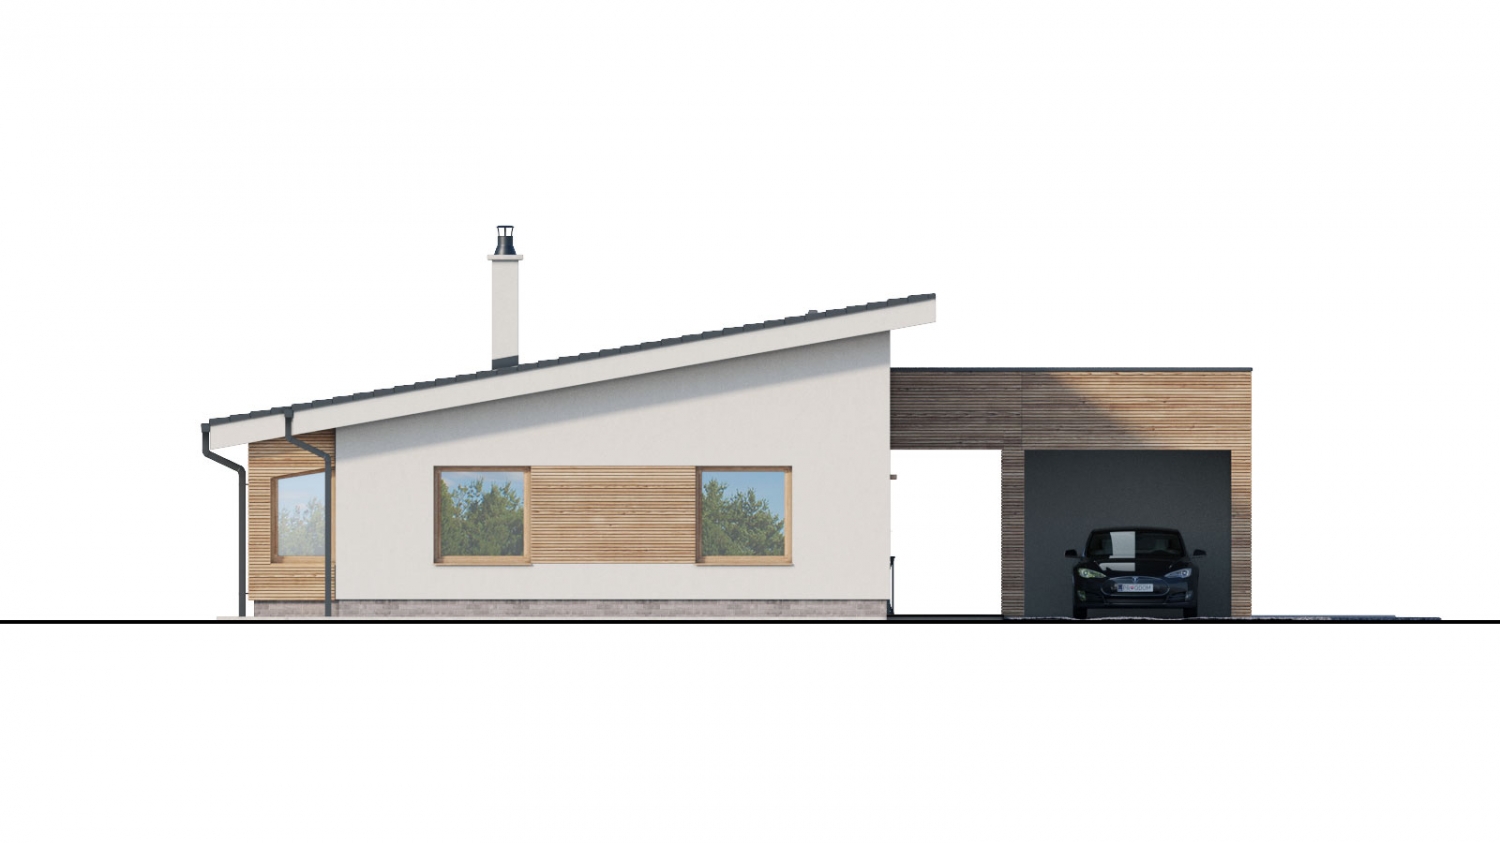 Pohľad 1. - projekt moderního bungalovu s garáží vhodného pro 4 až 6 člennou rodinu